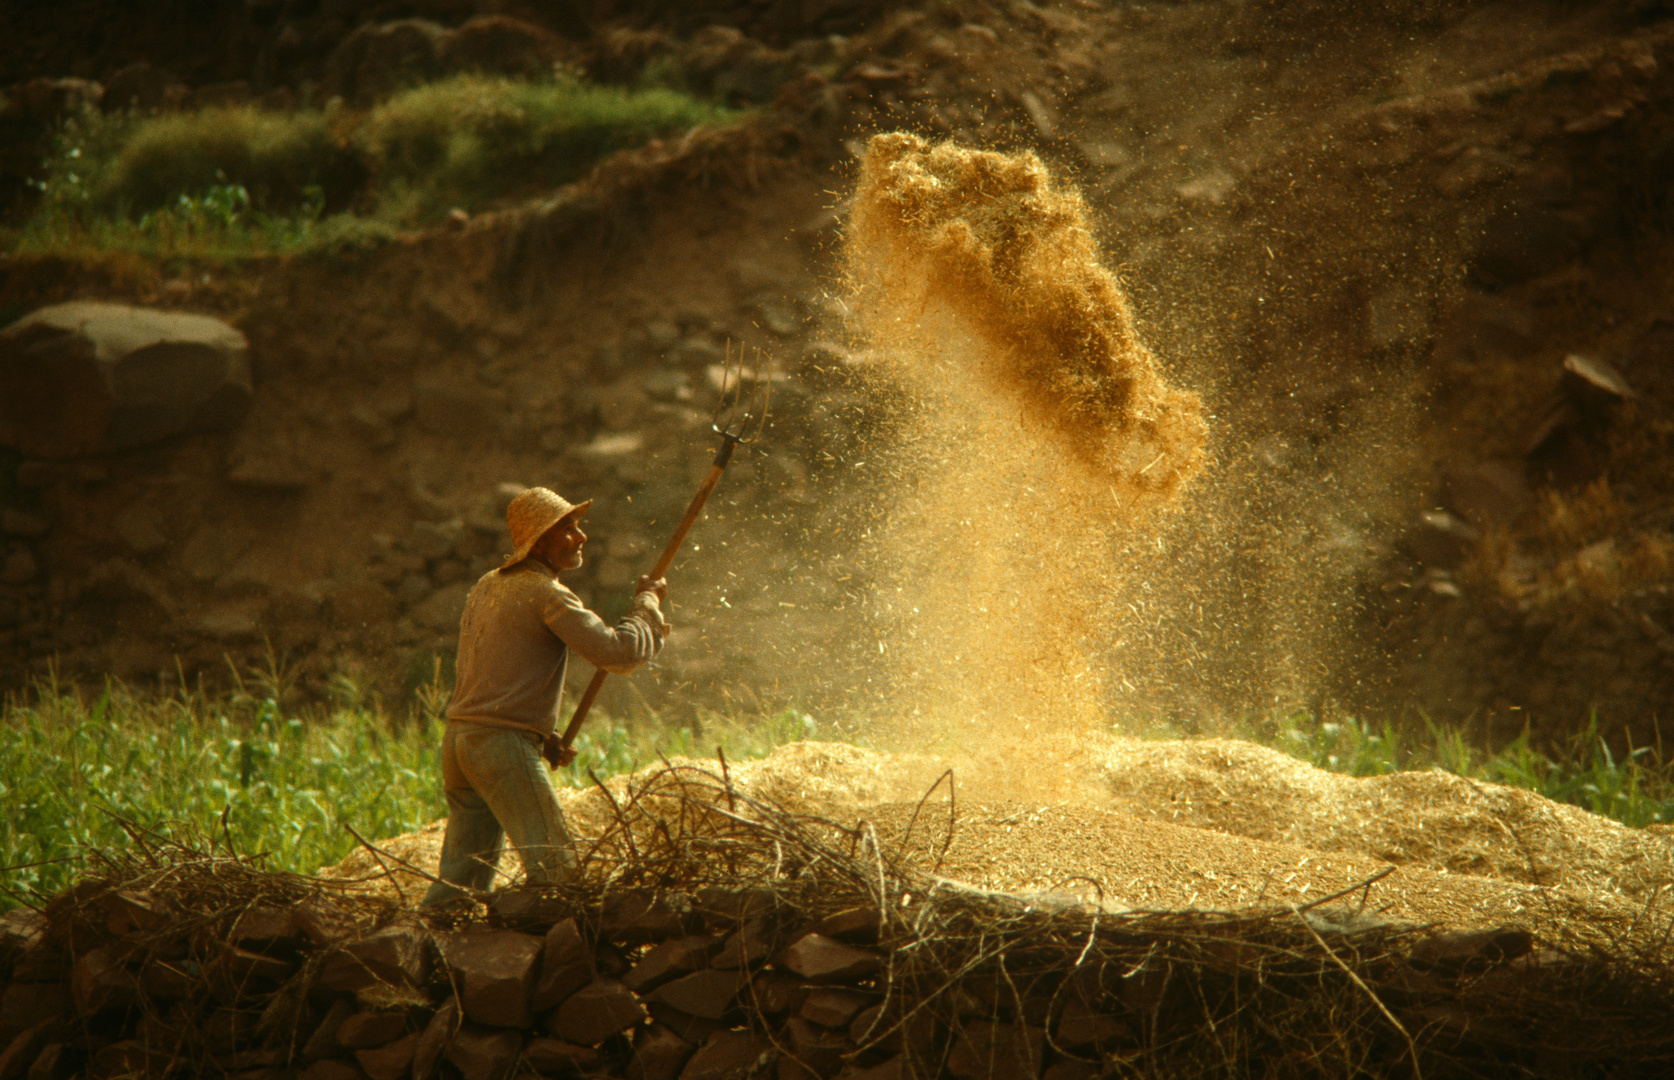 Spreue vom Weizen trennen - Marokko